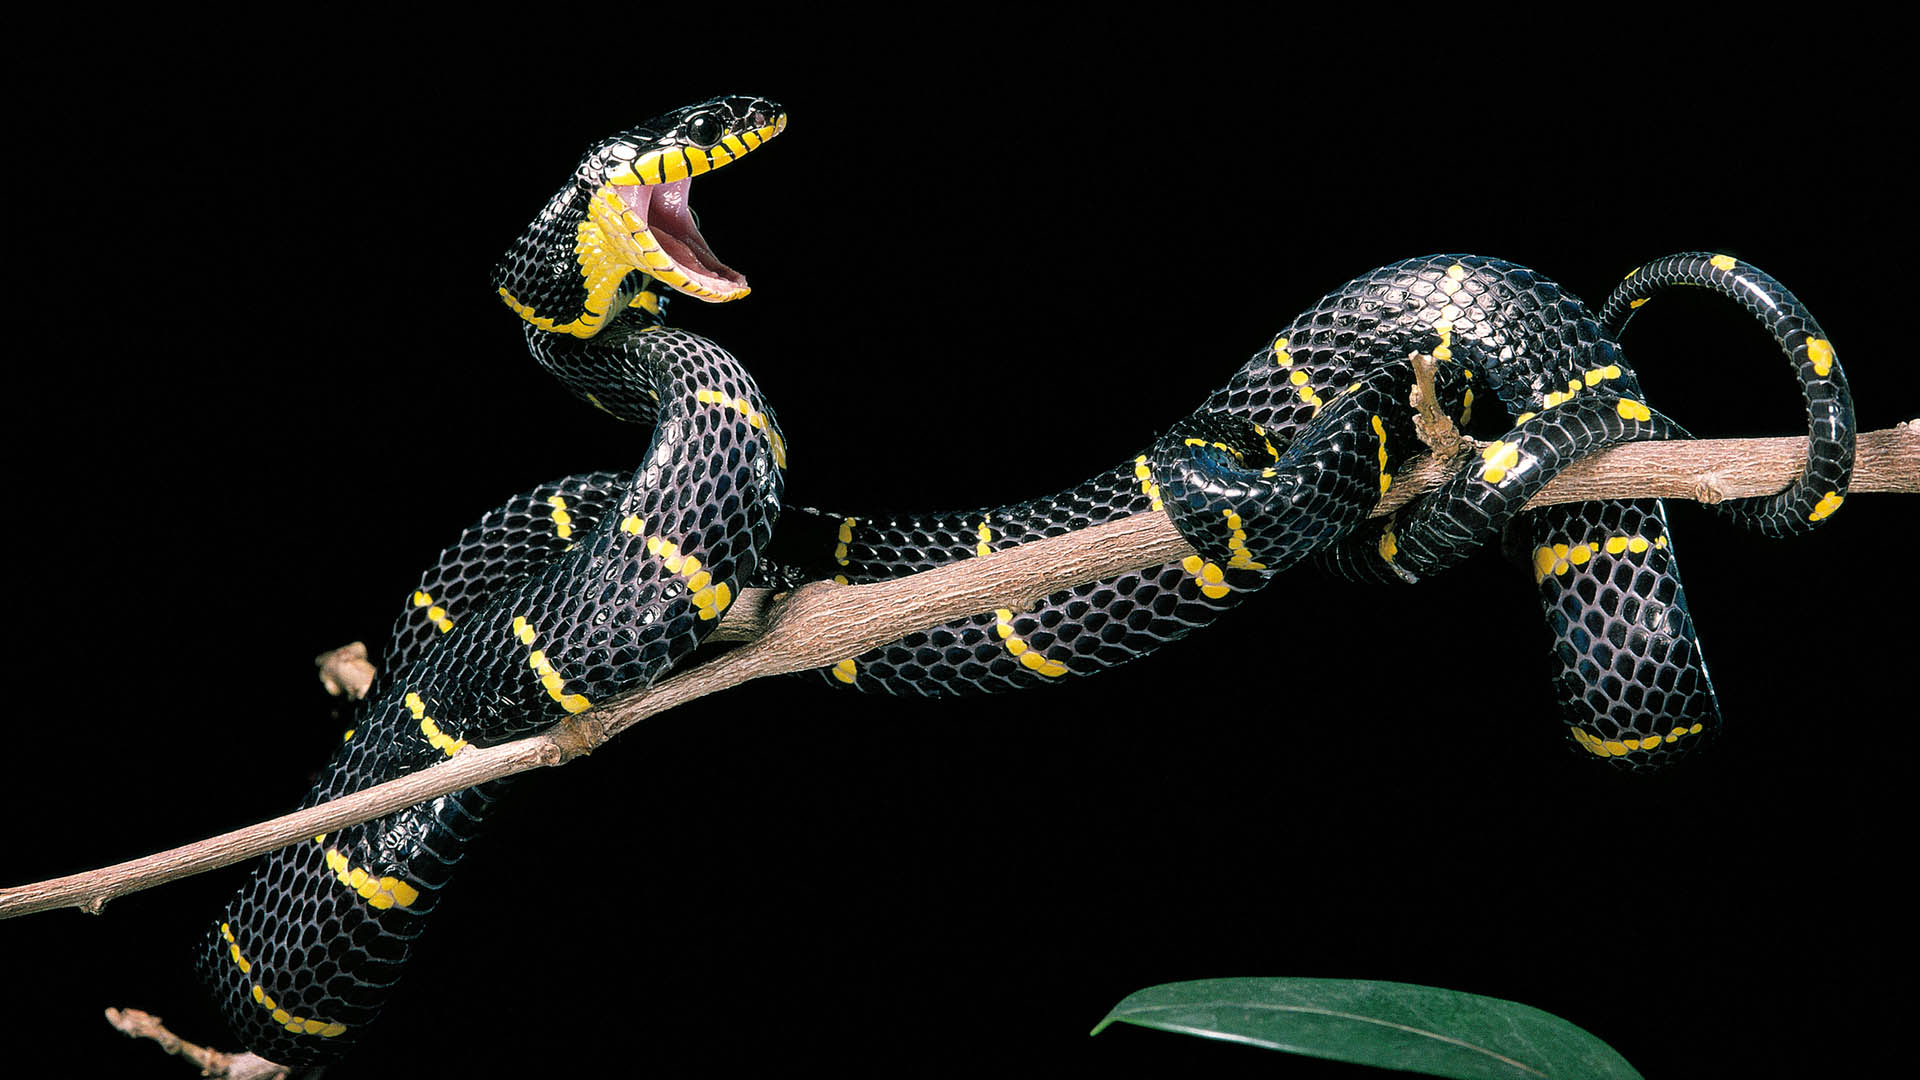 El veneno de esta serpiente no representa gran peligro para los humanos (Getty Images)